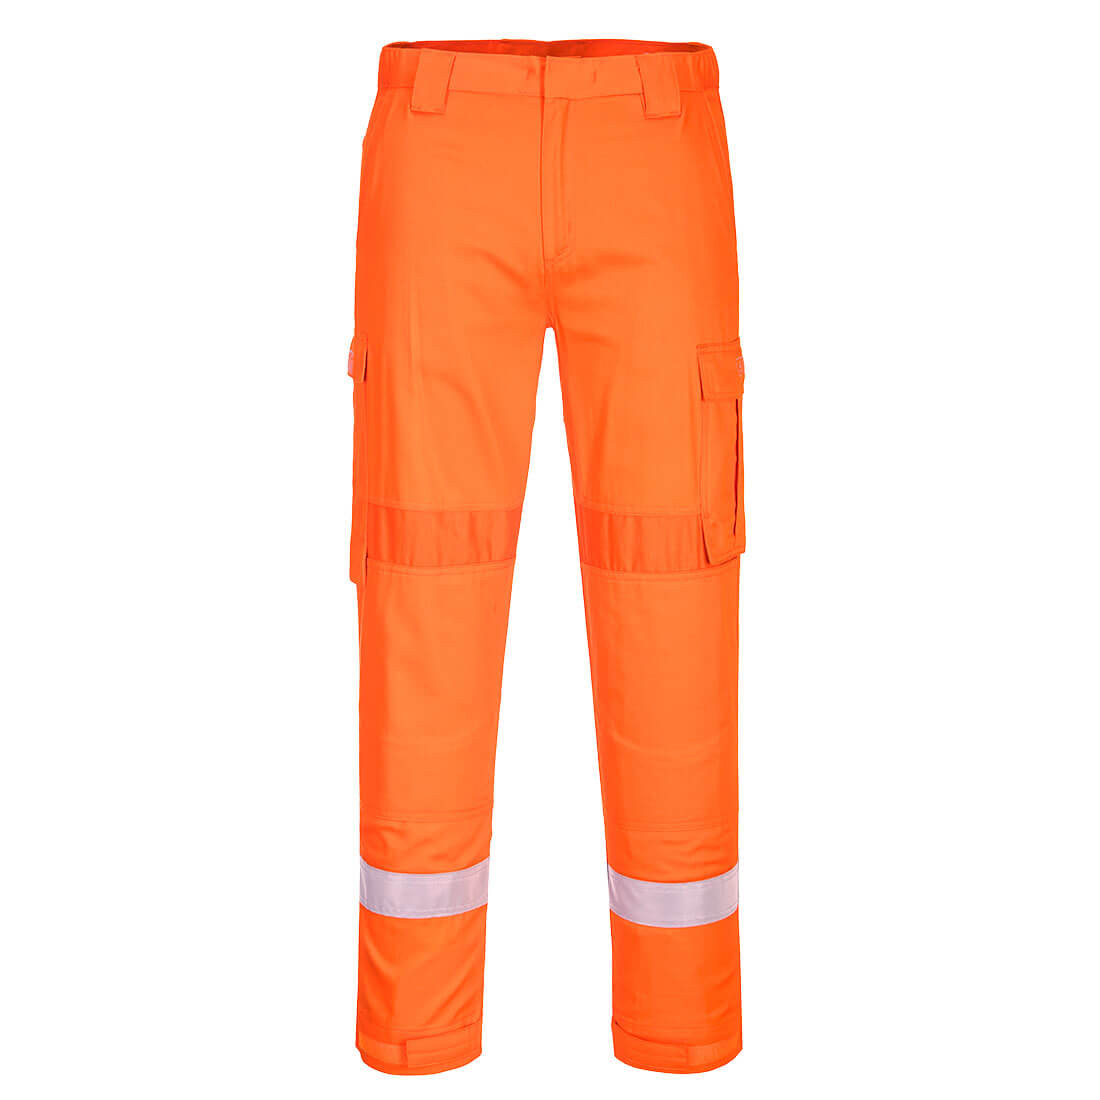 Pantaloni usori Bizflame Plus cu panouri elastice - Imbracaminte de protectie